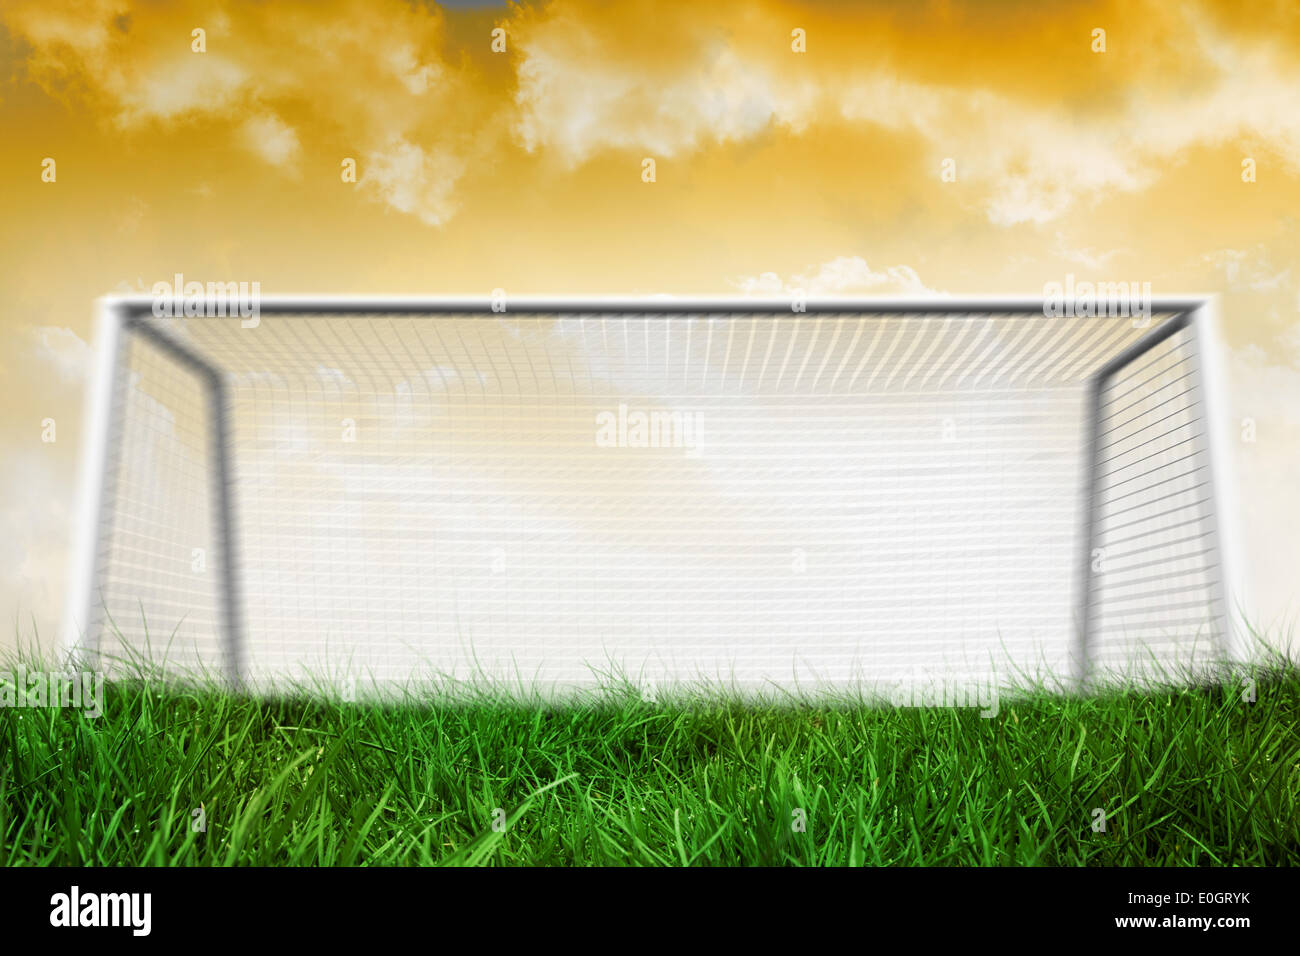 Goalpost on grass under yellow sky Stock Photo